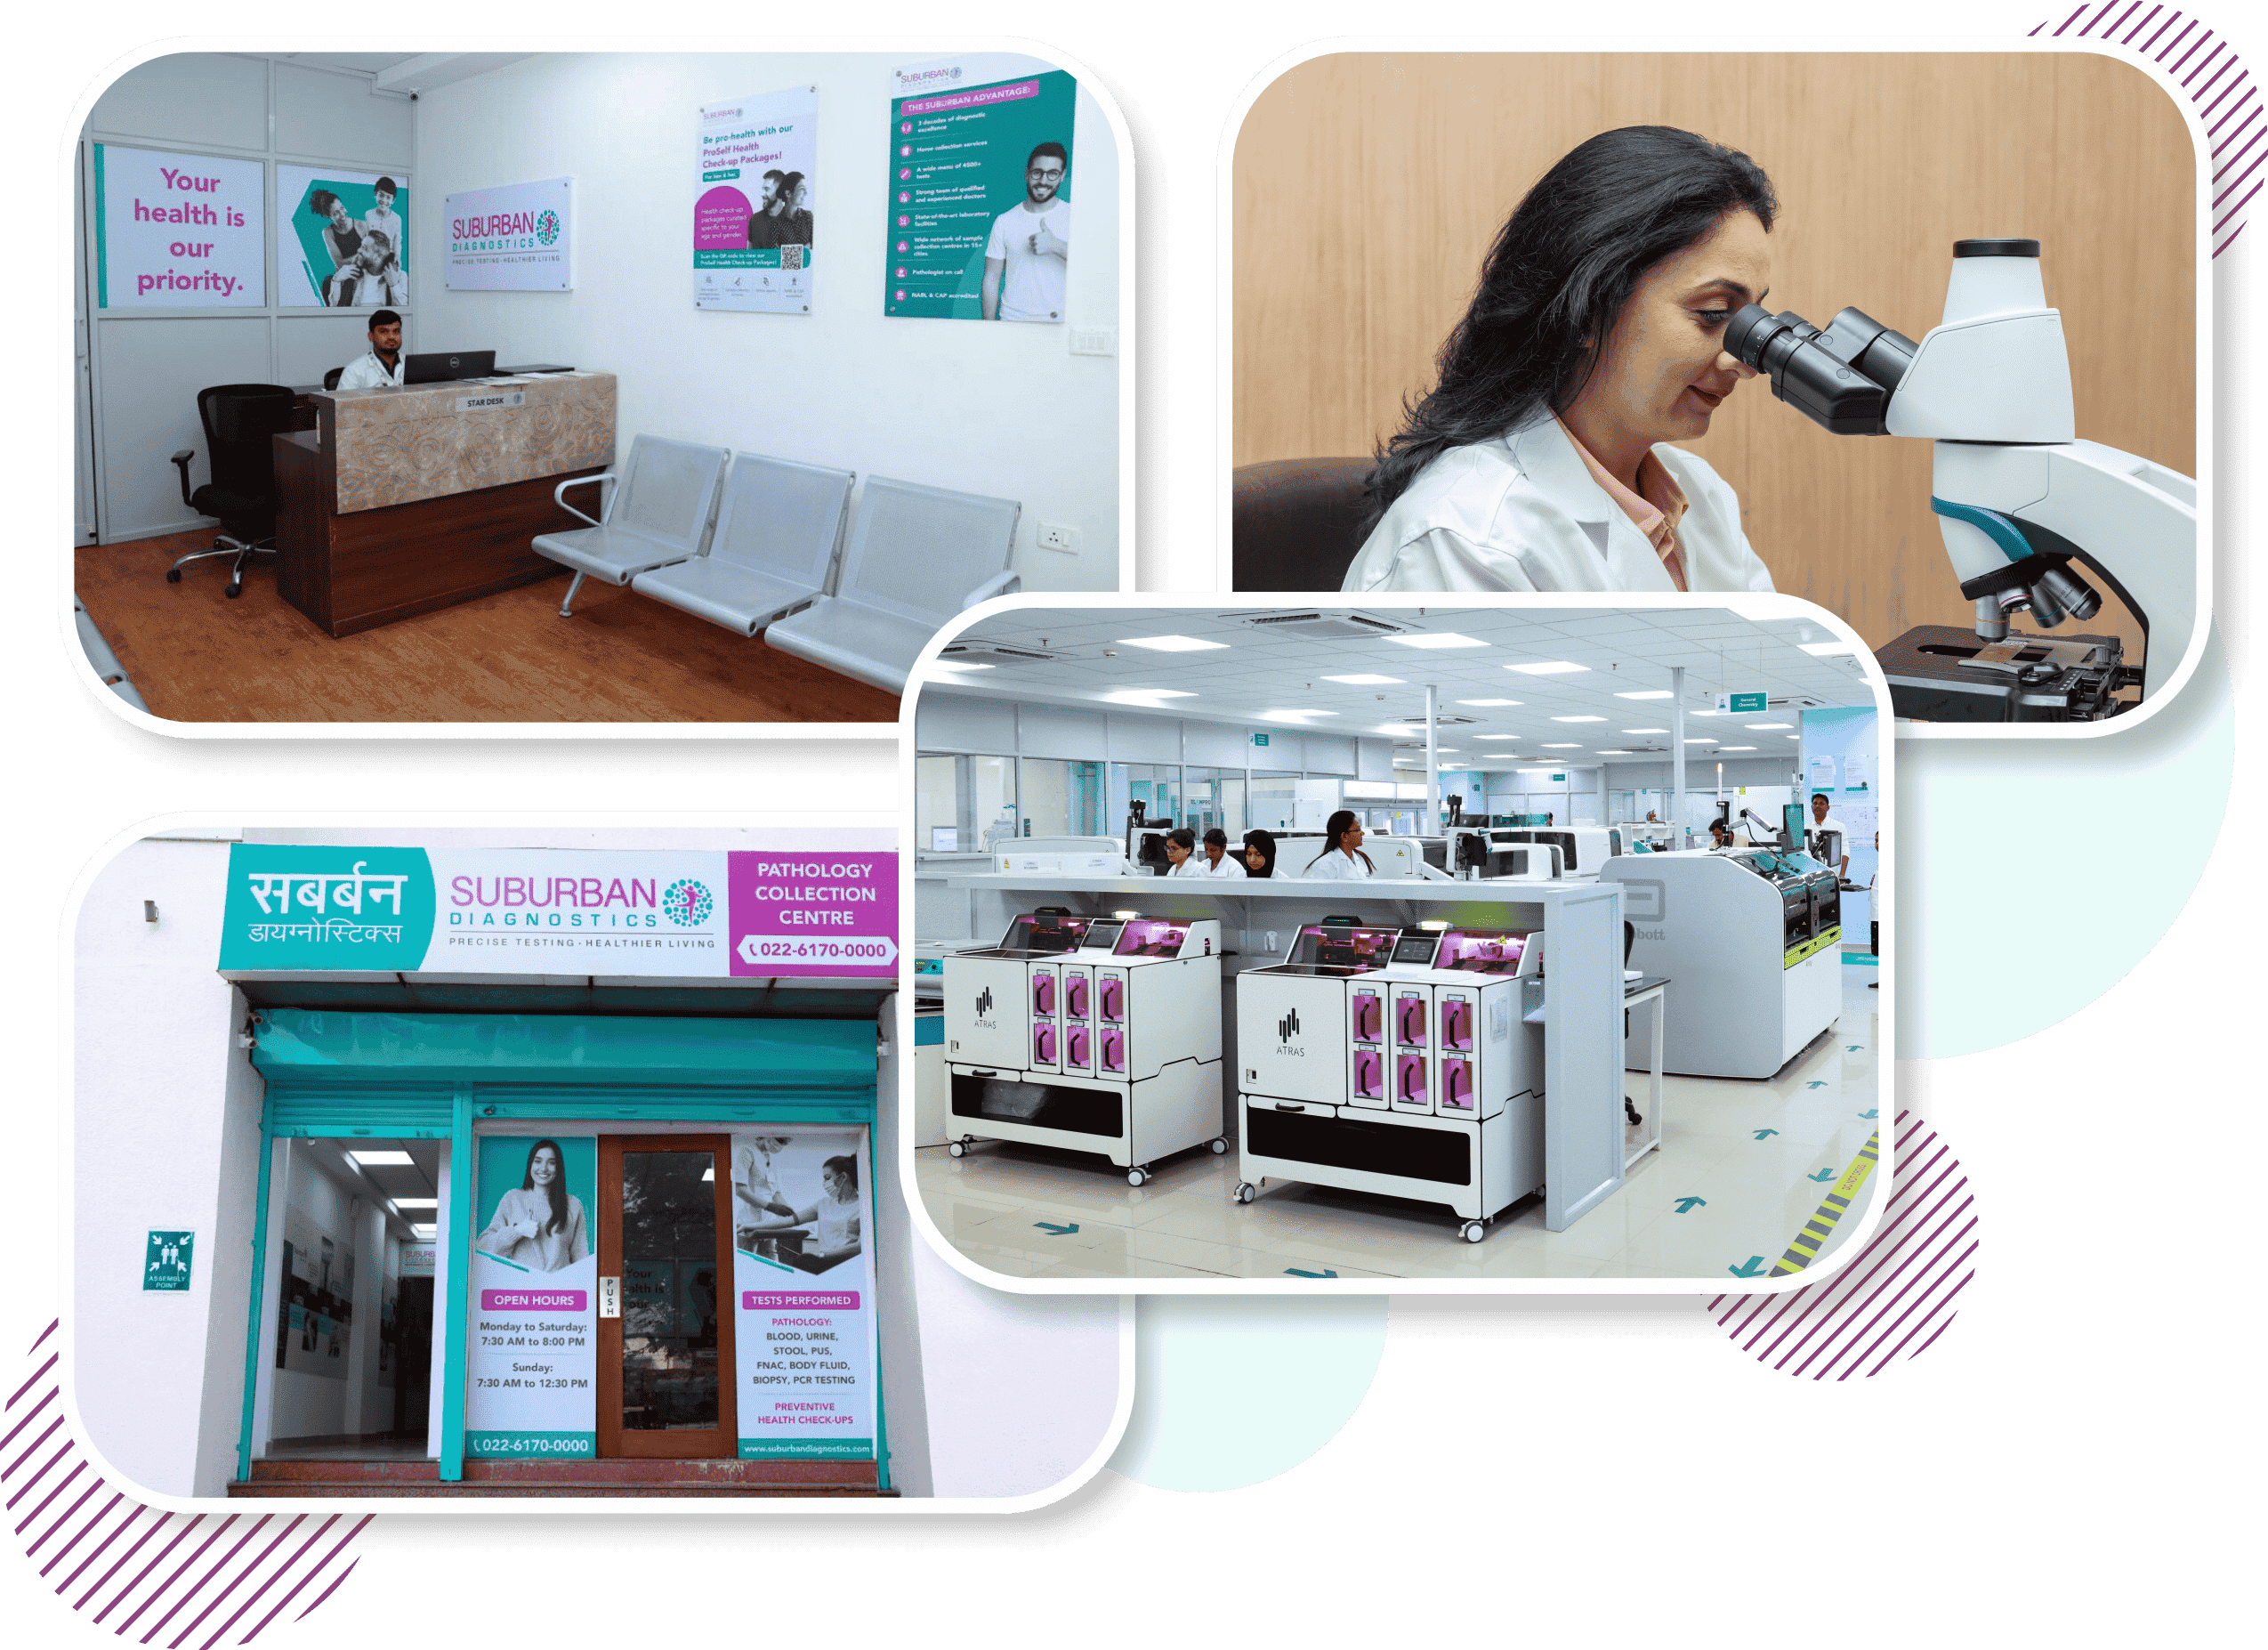 Suburban Diagnostics Center and Laboratory in Aurangabad